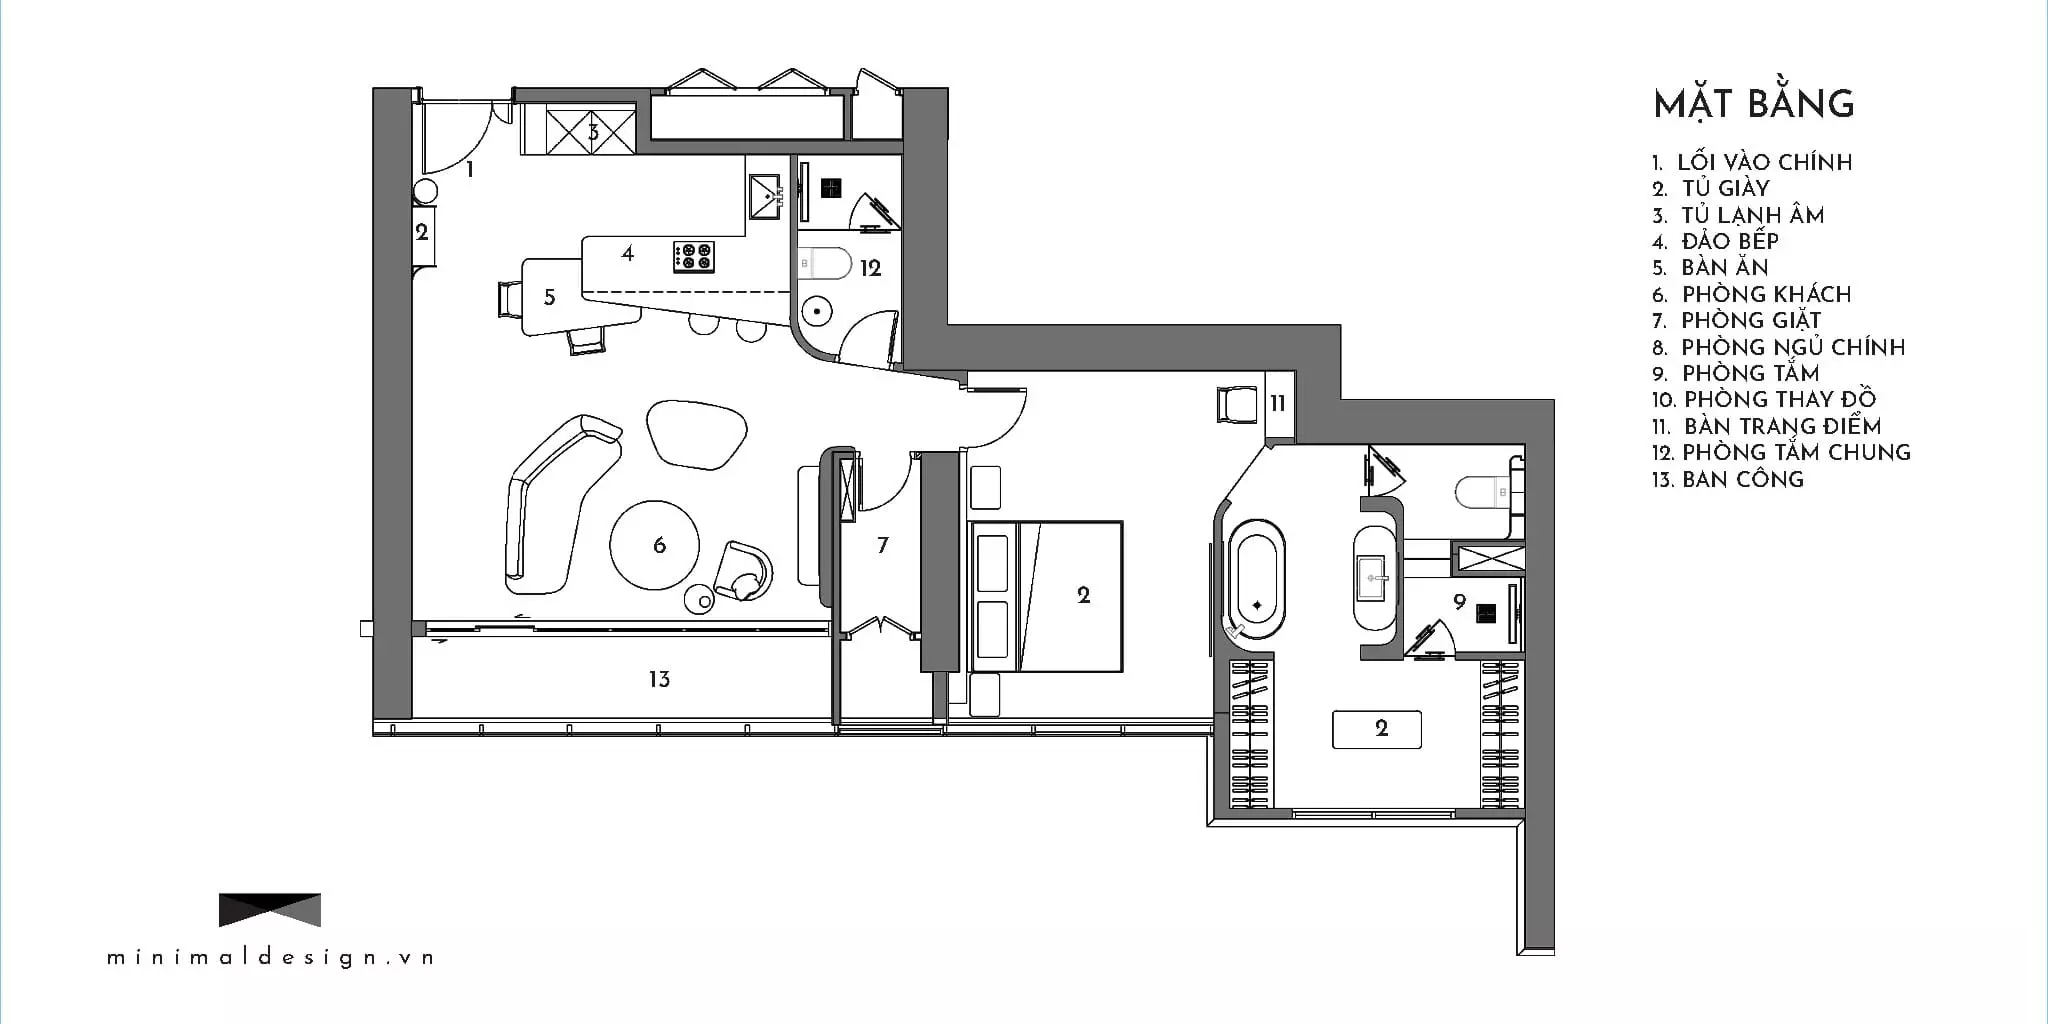 Bố trí nội thất căn hộ tối giản như thế nào để tạo nên không gian sống sang trọng và tối ưu diện tích